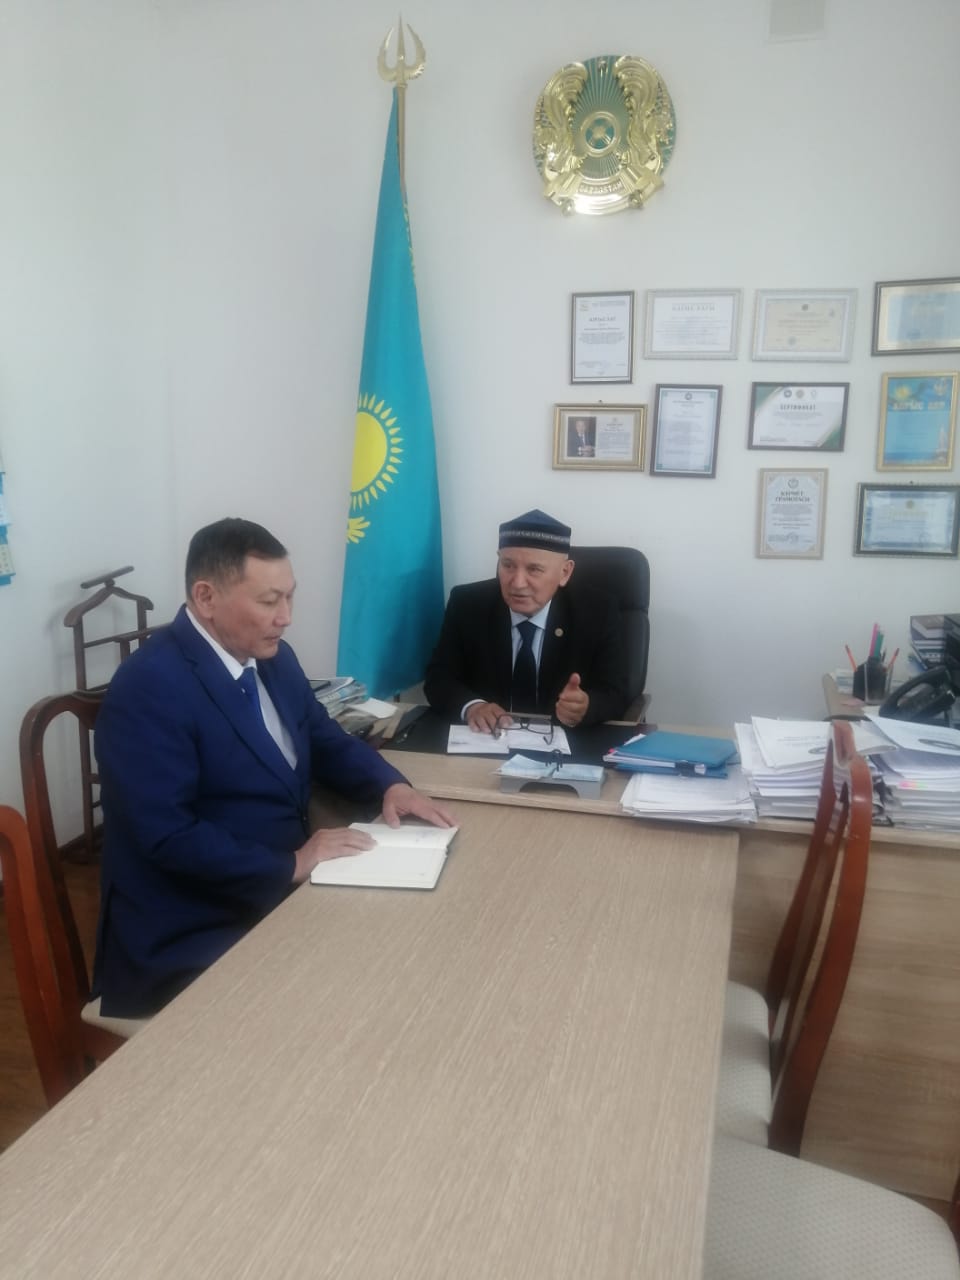 Представитель УПЧ по Акмолинской области встретился с представителем Ассамблеи народов Казахстана по Акмолинской области